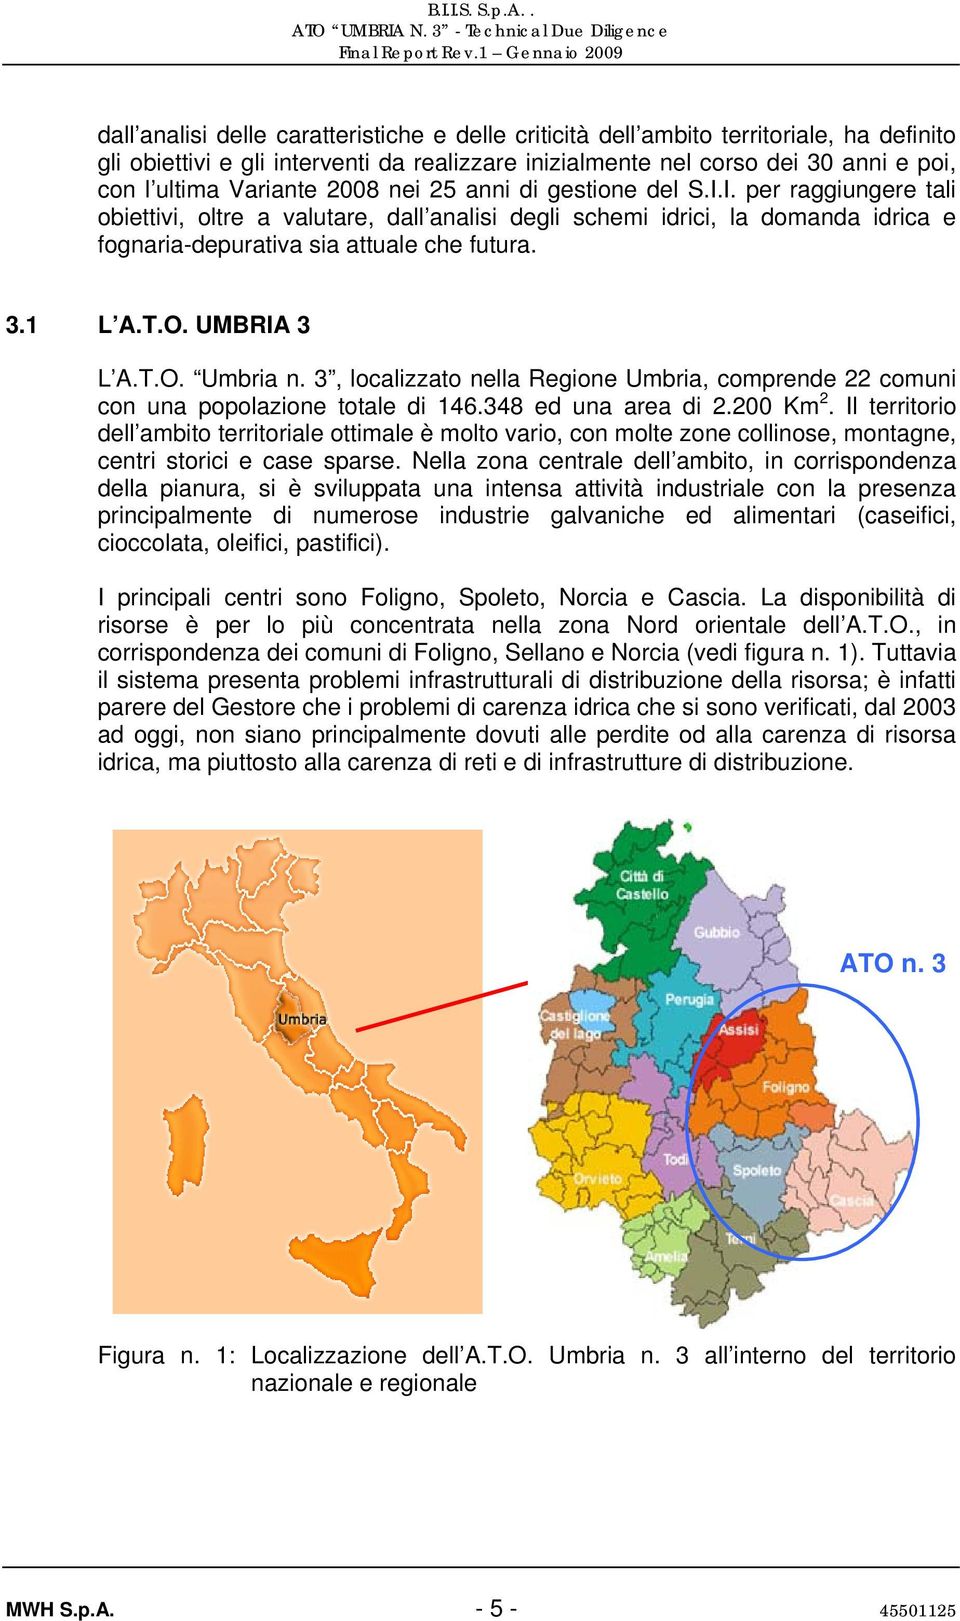 UMBRIA 3 L A.T.O. Umbria n. 3, localizzato nella Regione Umbria, comprende 22 comuni con una popolazione totale di 146.348 ed una area di 2.200 Km 2.